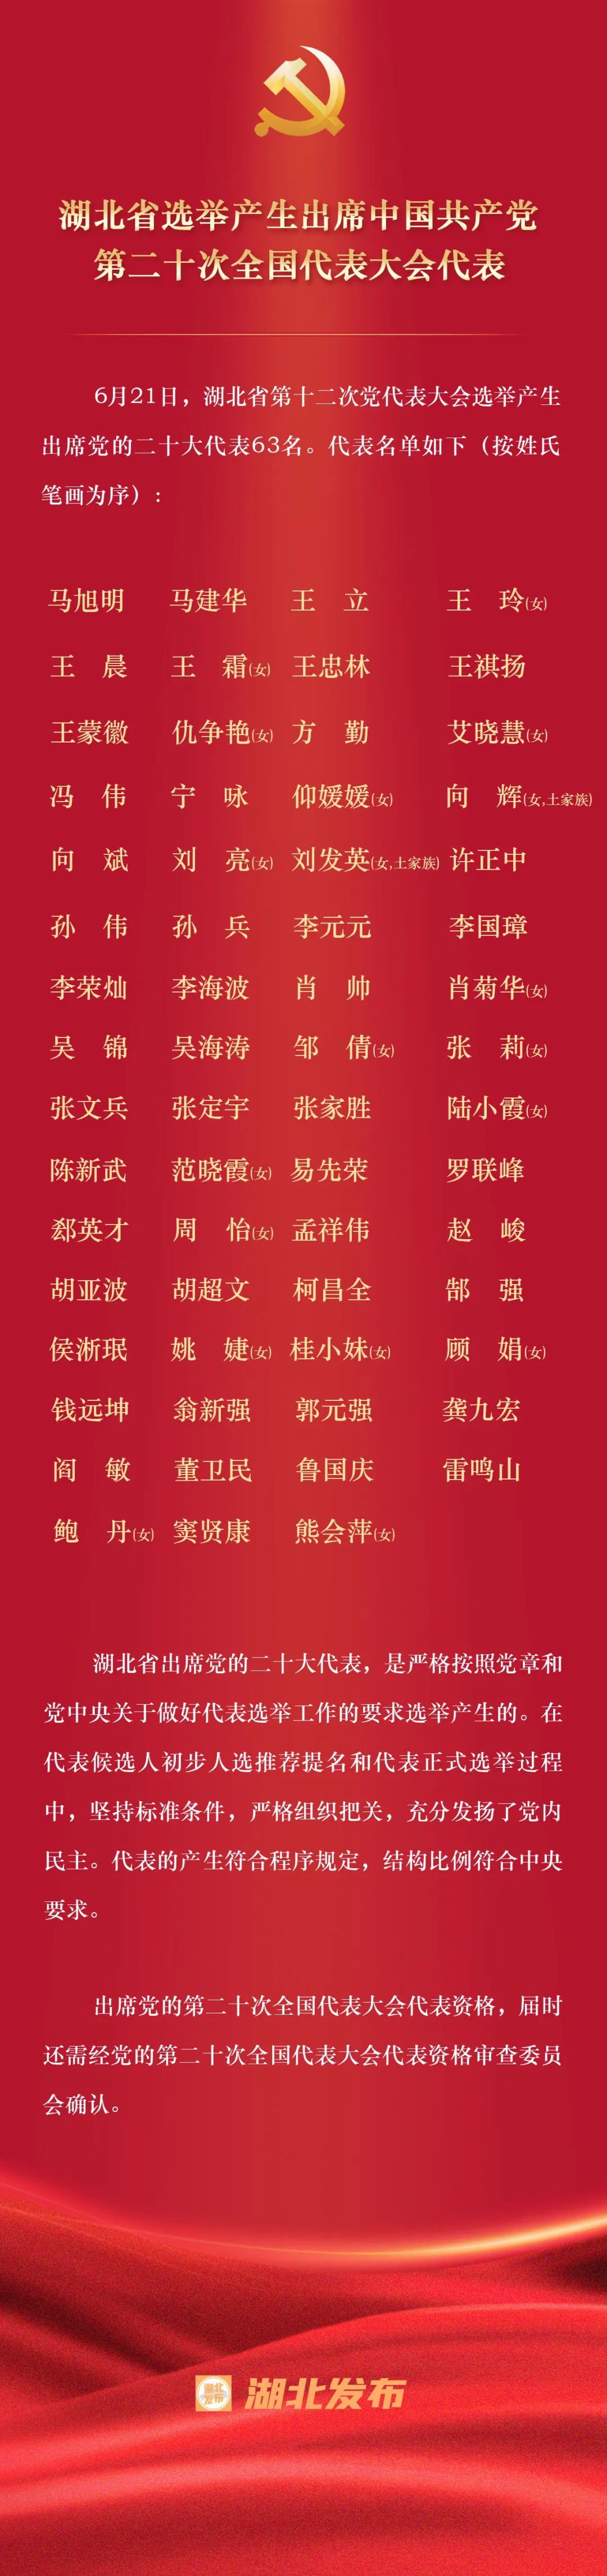 湖北省选举产生出席中国共产党第二十次全国代表大会代表